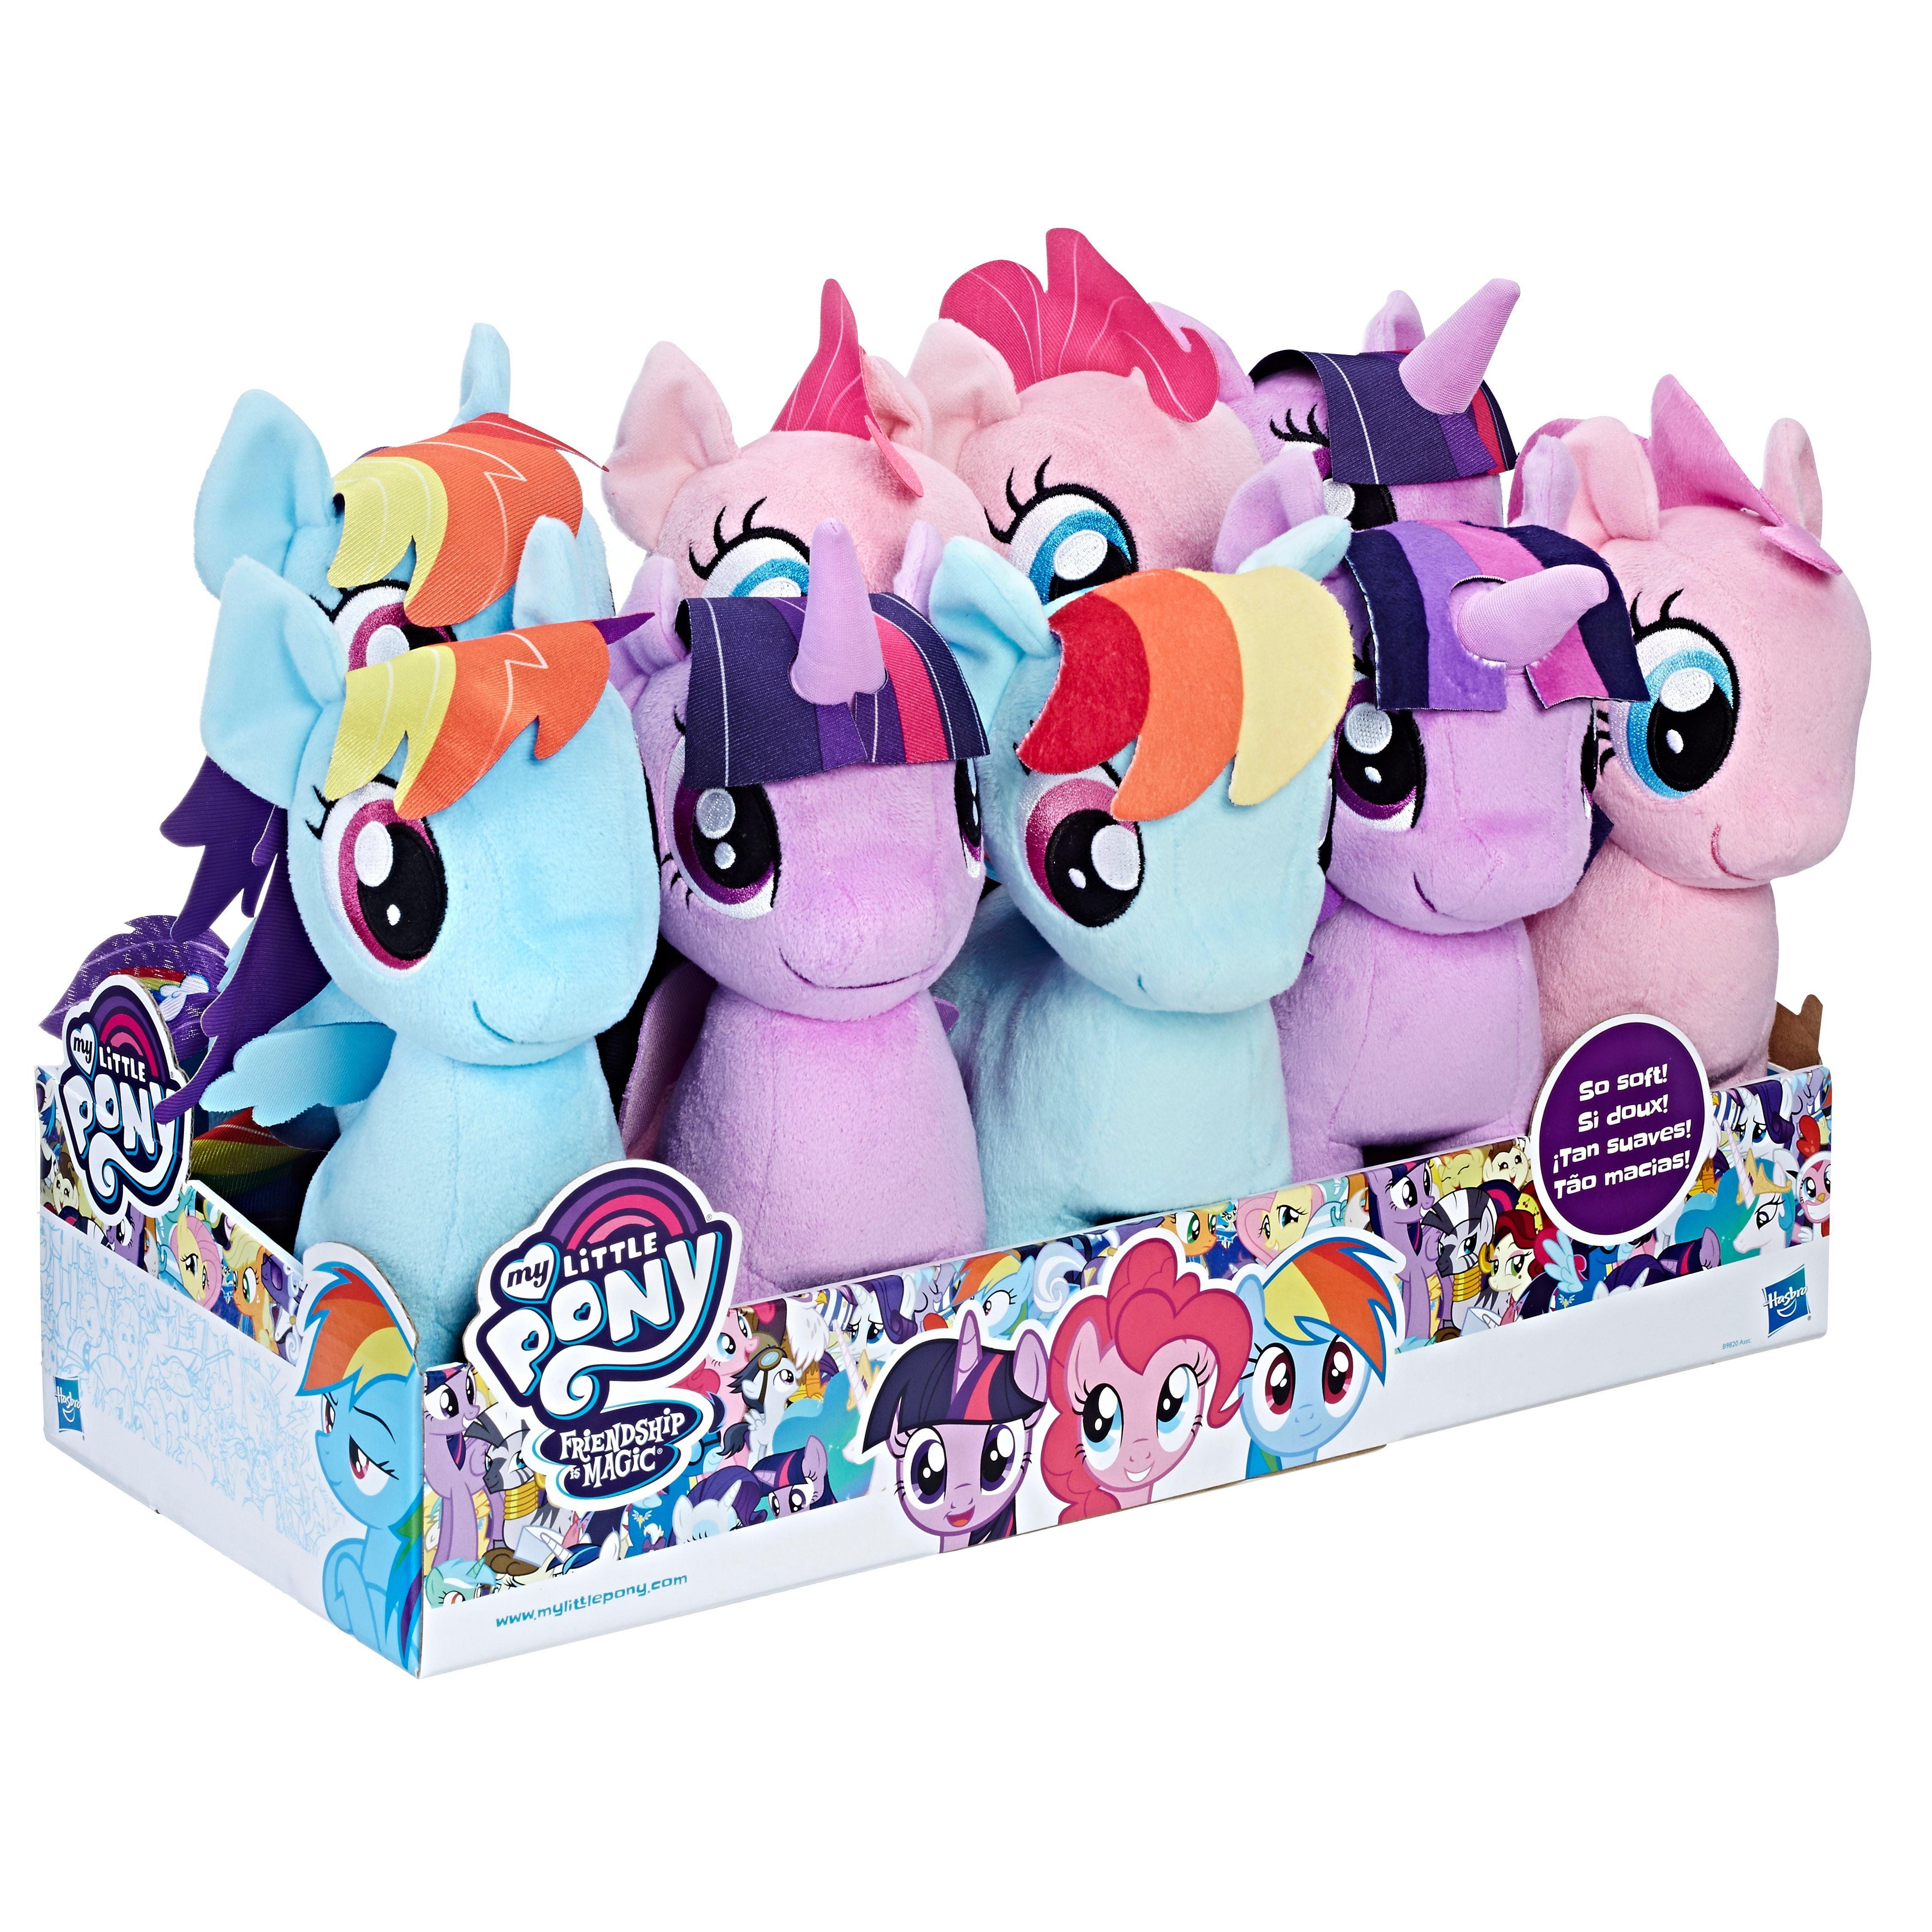 pony stuffed toys